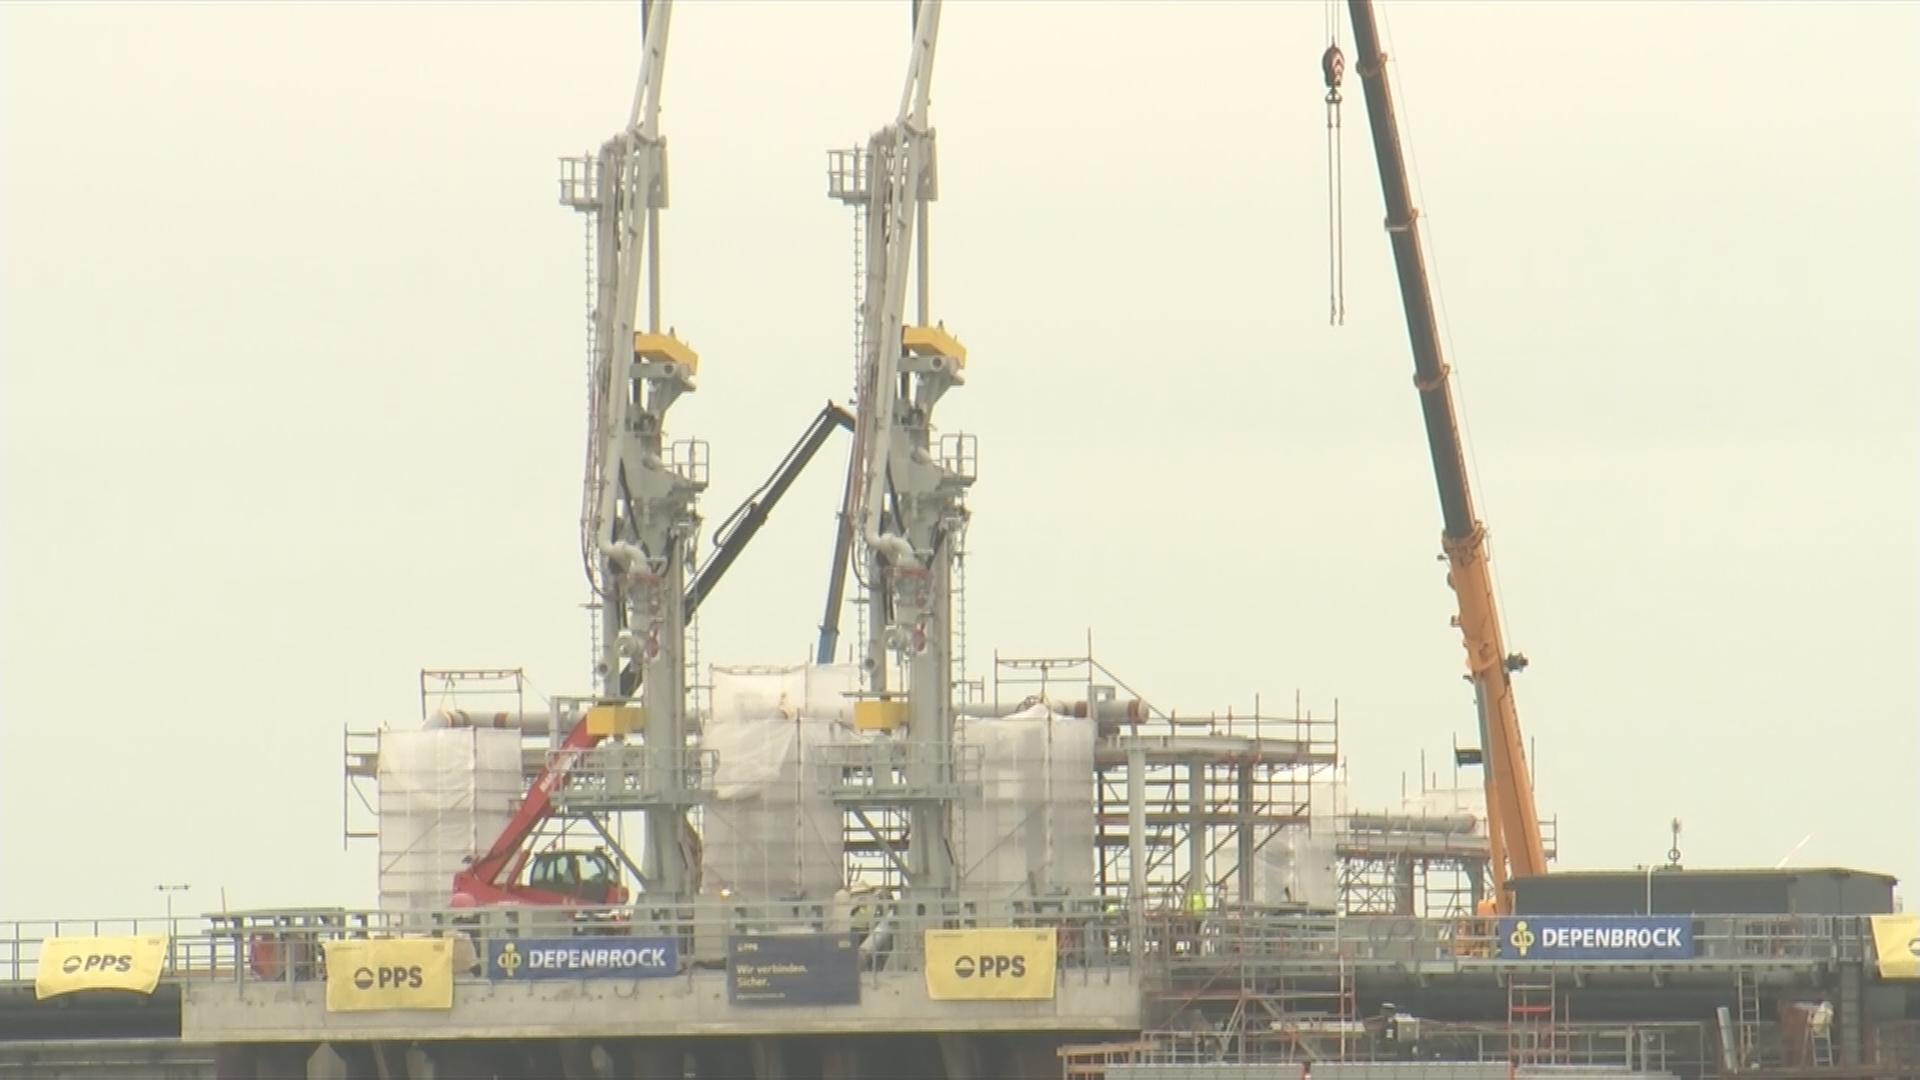 Nachaufnahme des LNG-Terminals in Wilhelmshaven. Es sind noch Baugerüste und ein Baukran zu sehen.